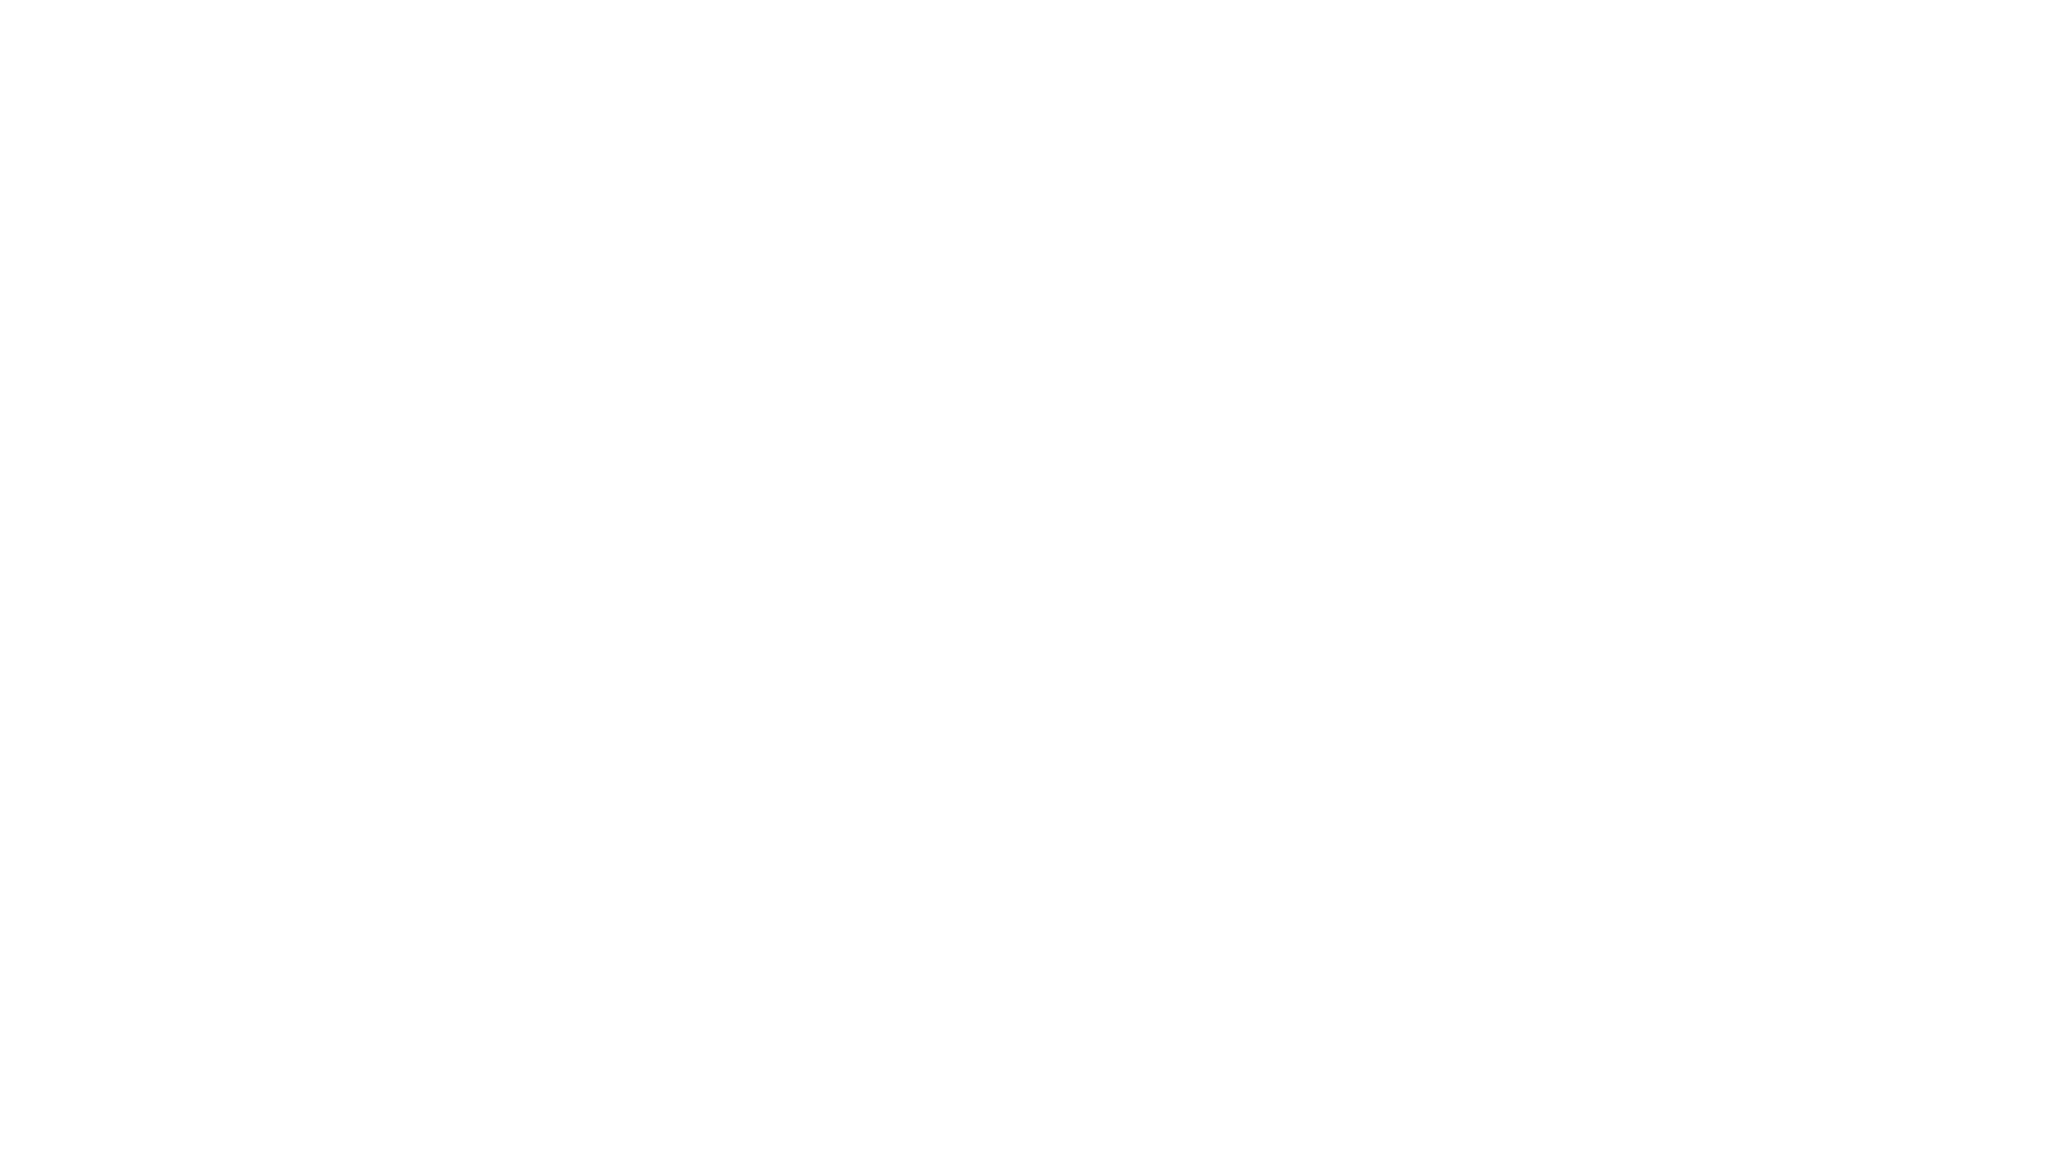 מחנה המשפחה הכי טוב באמריקה